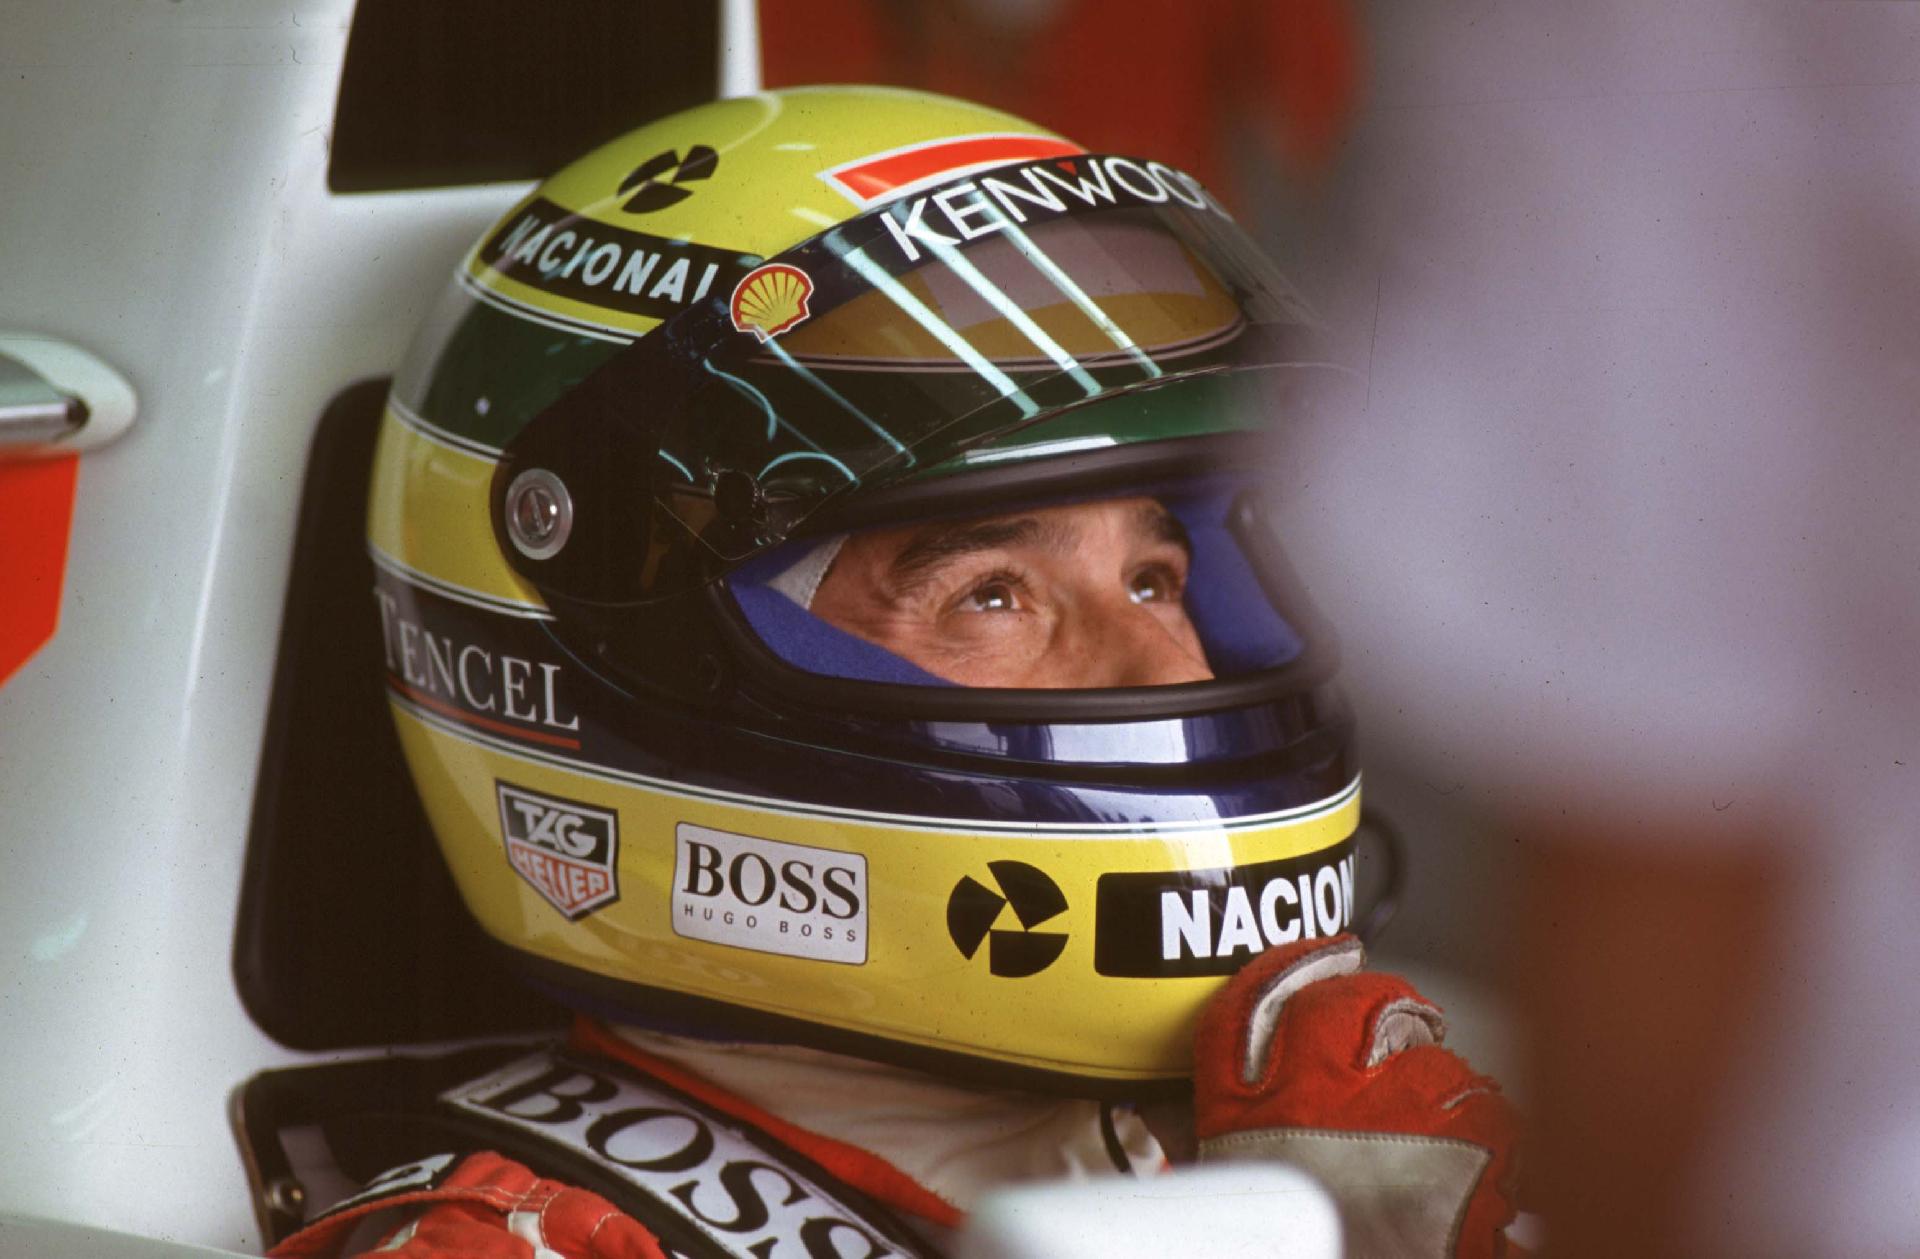 Treinta años amando a unos colores. Ayrton Senna y la historia detrás de su casco